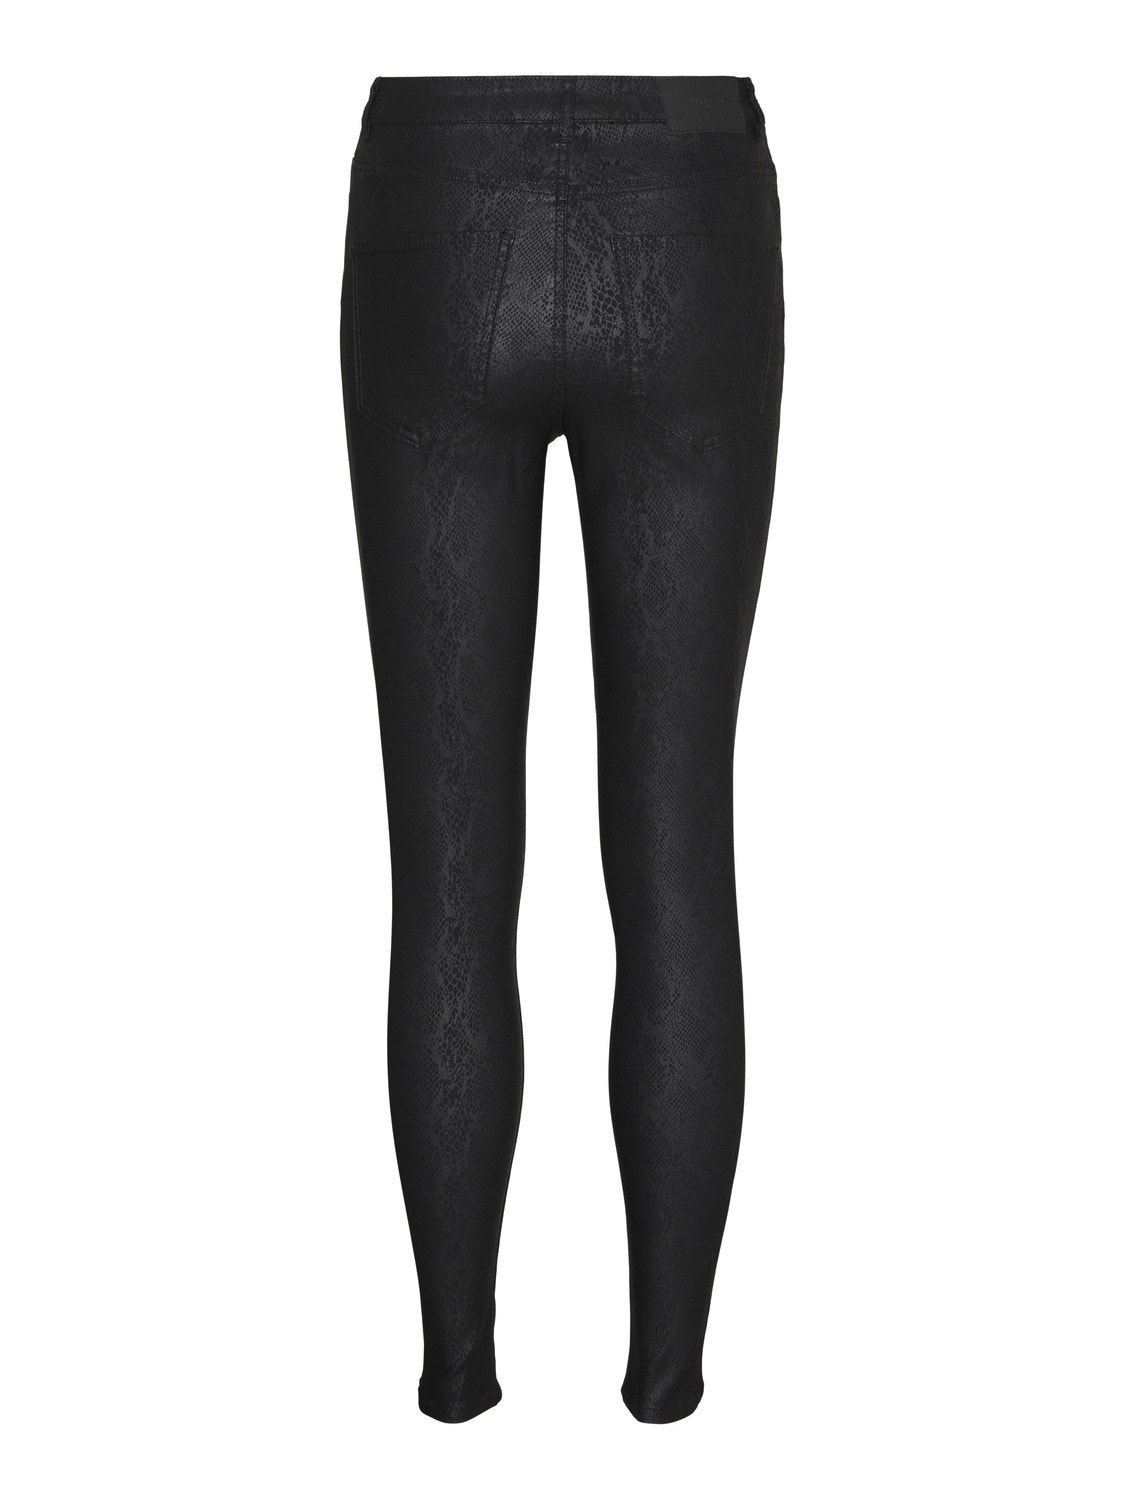 Vero Moda VMCSOPHIA Trousers -Black - 10307316